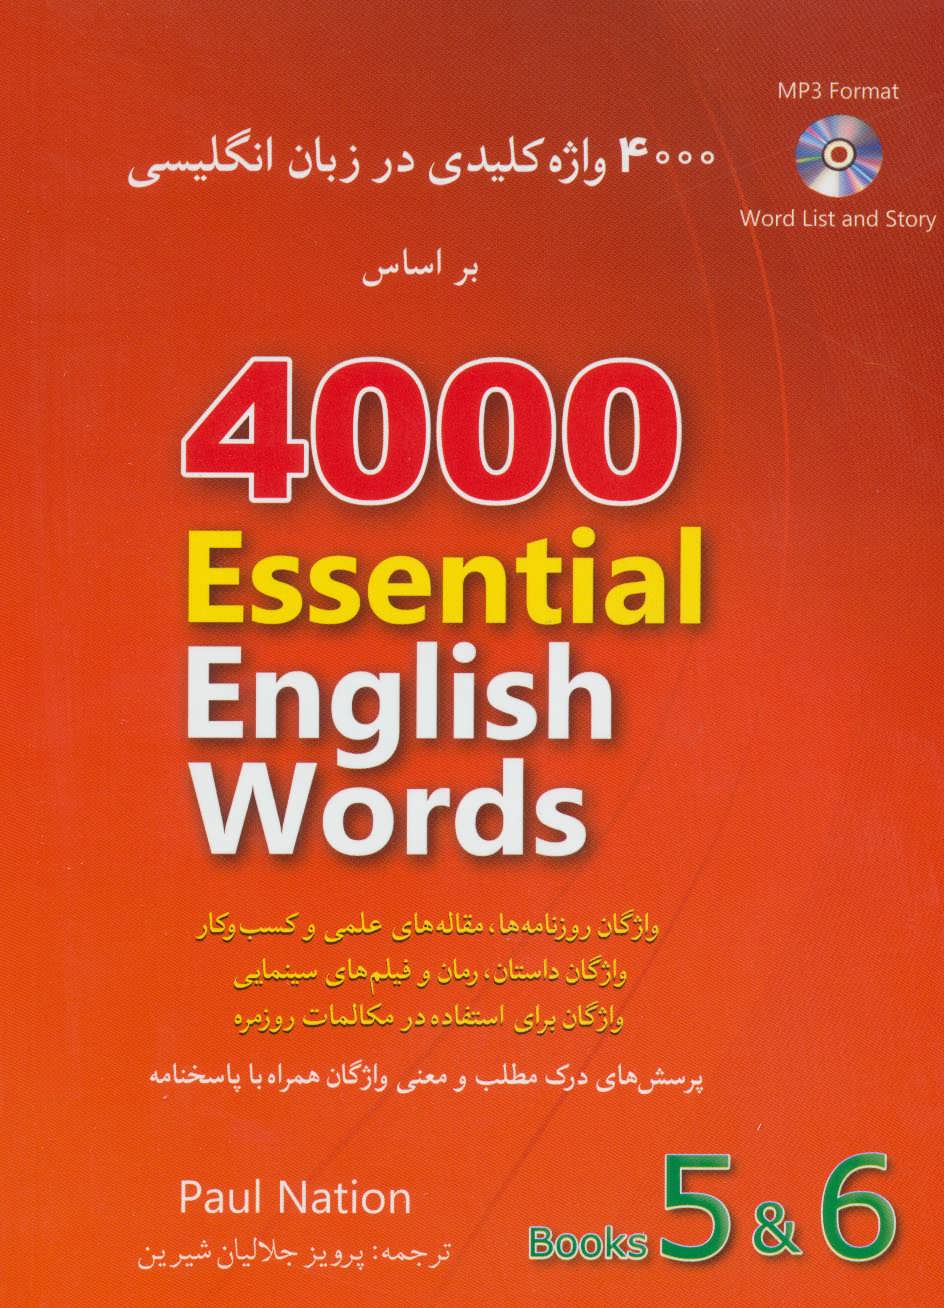 4000 واژه كليدي در زبان انگليسي (6 و 5) همراه با سي دي (2زبانه) Book 5 & 6 ‏‫‬‭ 4000 Essential English Words‬